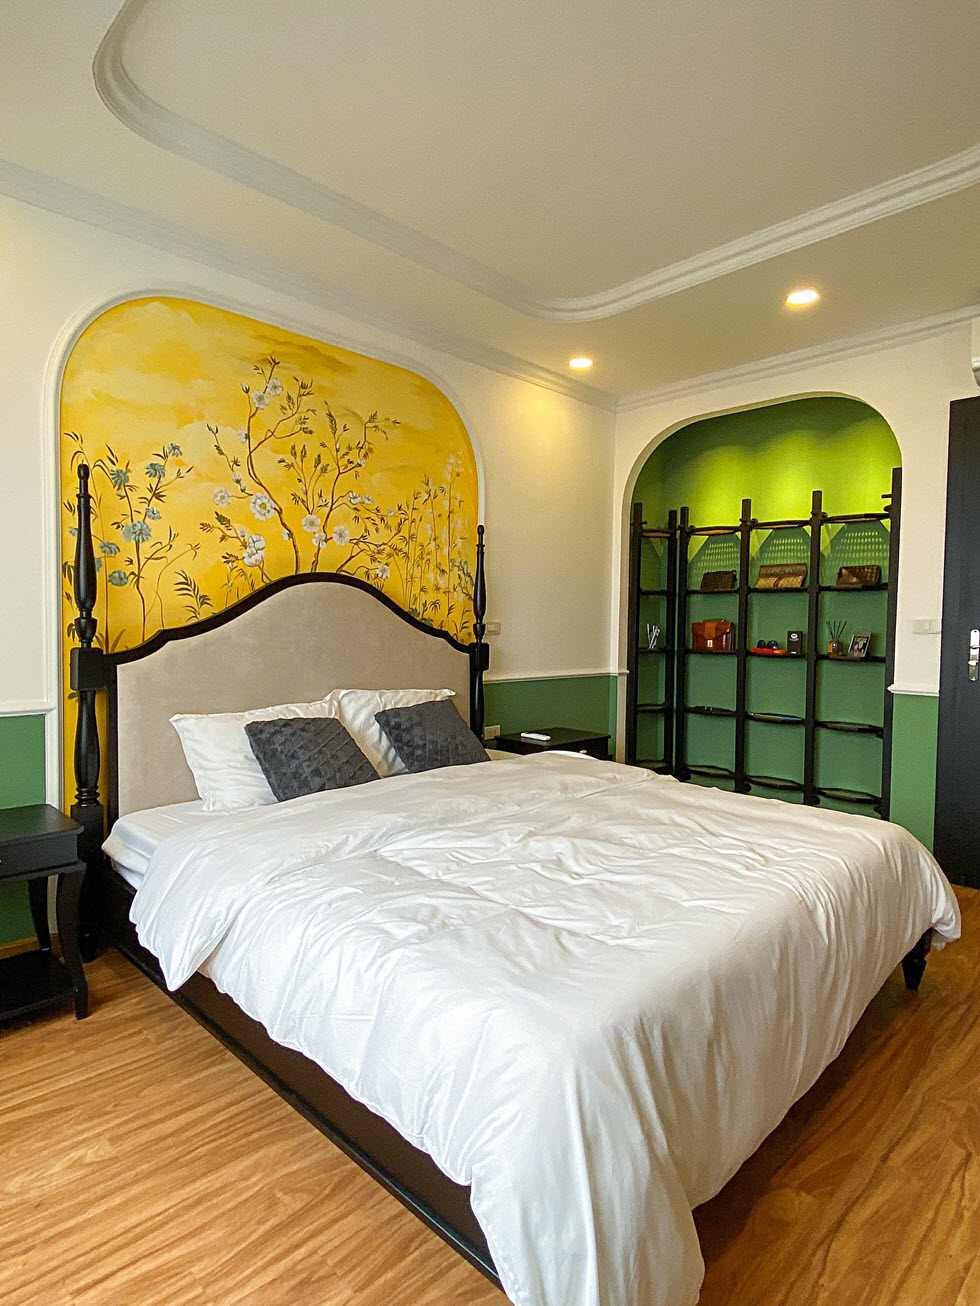 Gia chủ yêu màu xanh lá cây nên kiến trúc sư khéo léo phối kết vào các không gian chức năng, chủ yếu thông qua màu sơn tường tạo điểm nhấn.